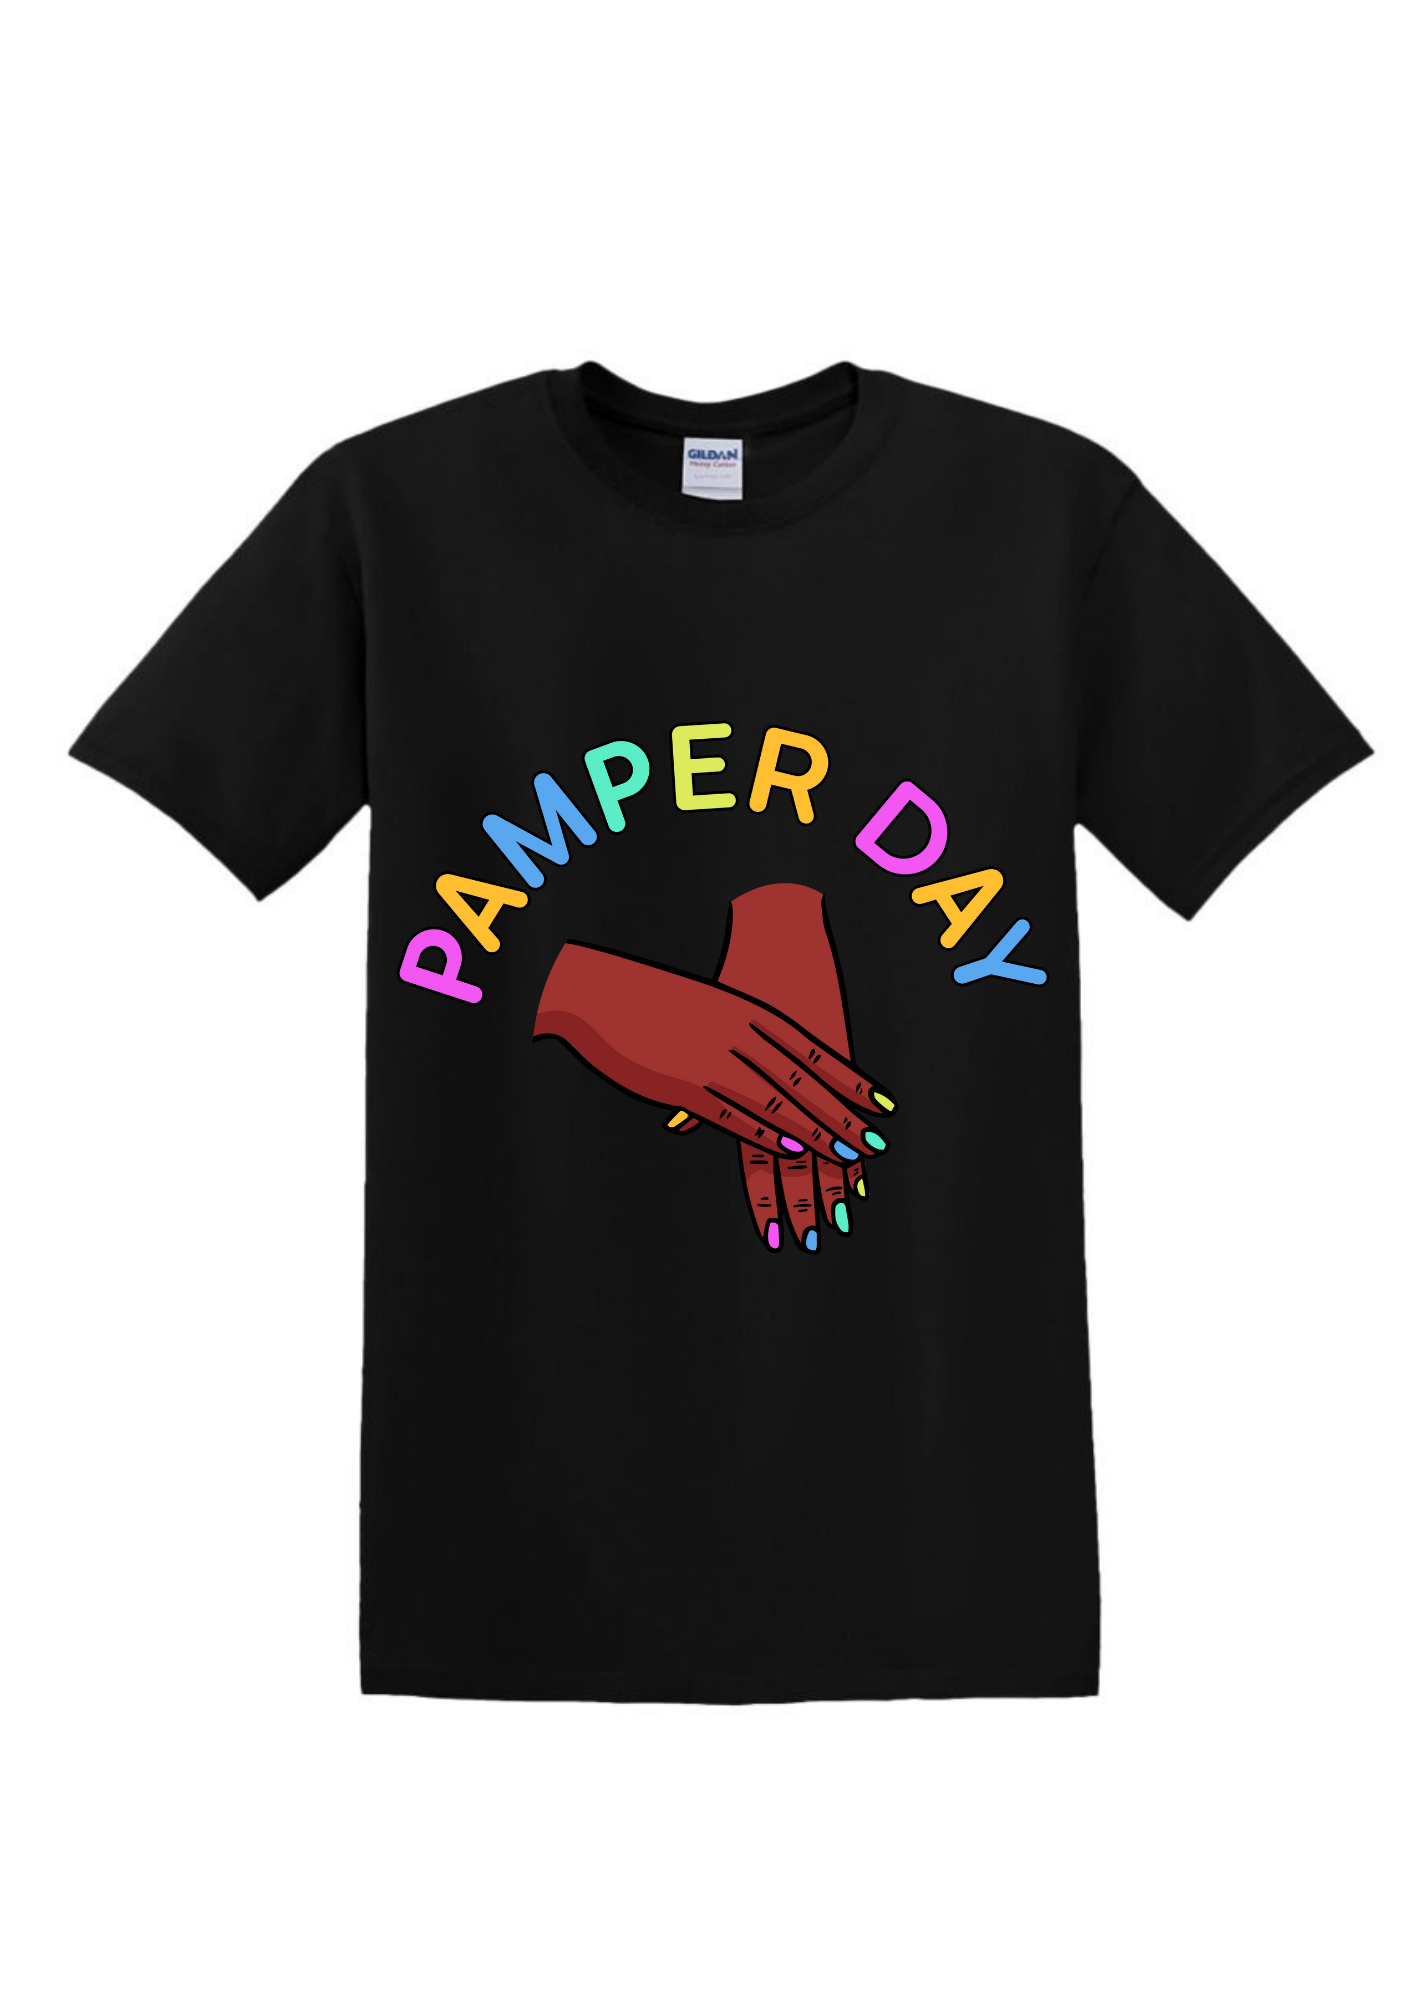 Pamper Day Women's T-shirt	